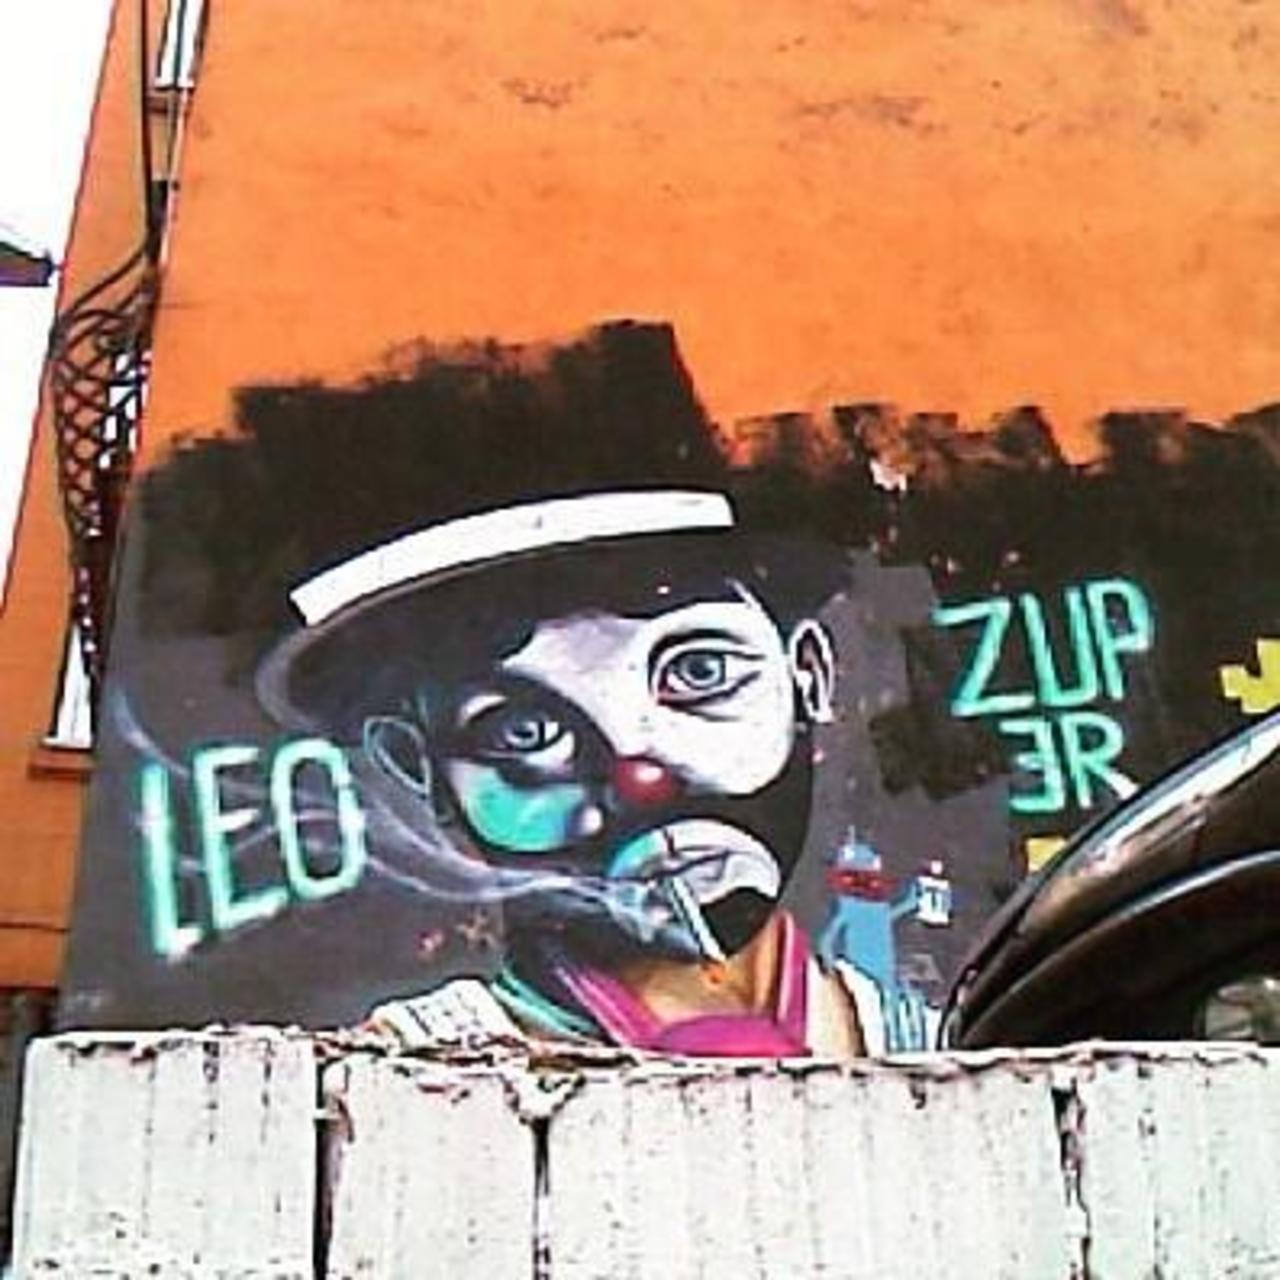 By @leolunatic @dsb_graff #dsb_graff @rsa_graffiti @streetawesome #streetart #urbanart #graffitiart #graffiti #stre… http://t.co/h2KD5db43G